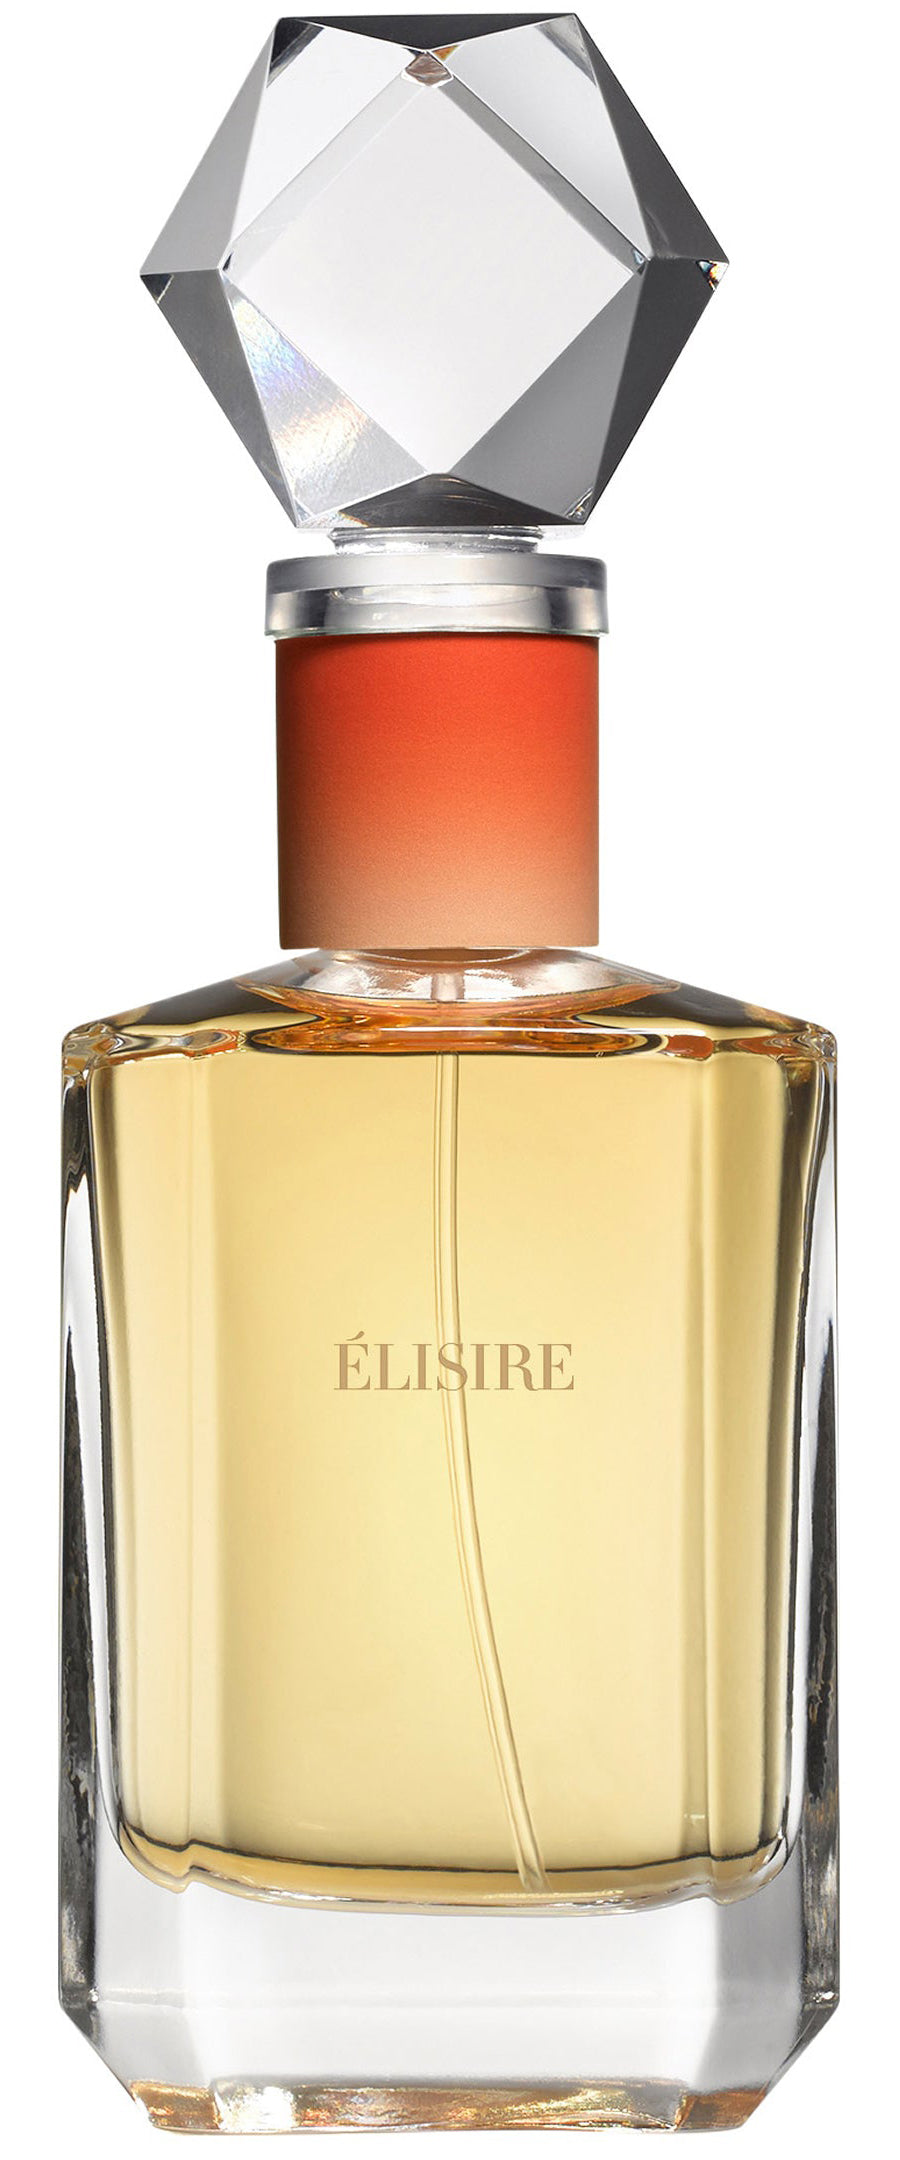 Albait Aldimashq Ombre Nomade Eau De Parfum 75ml For Men & Women – Perfume  Palace